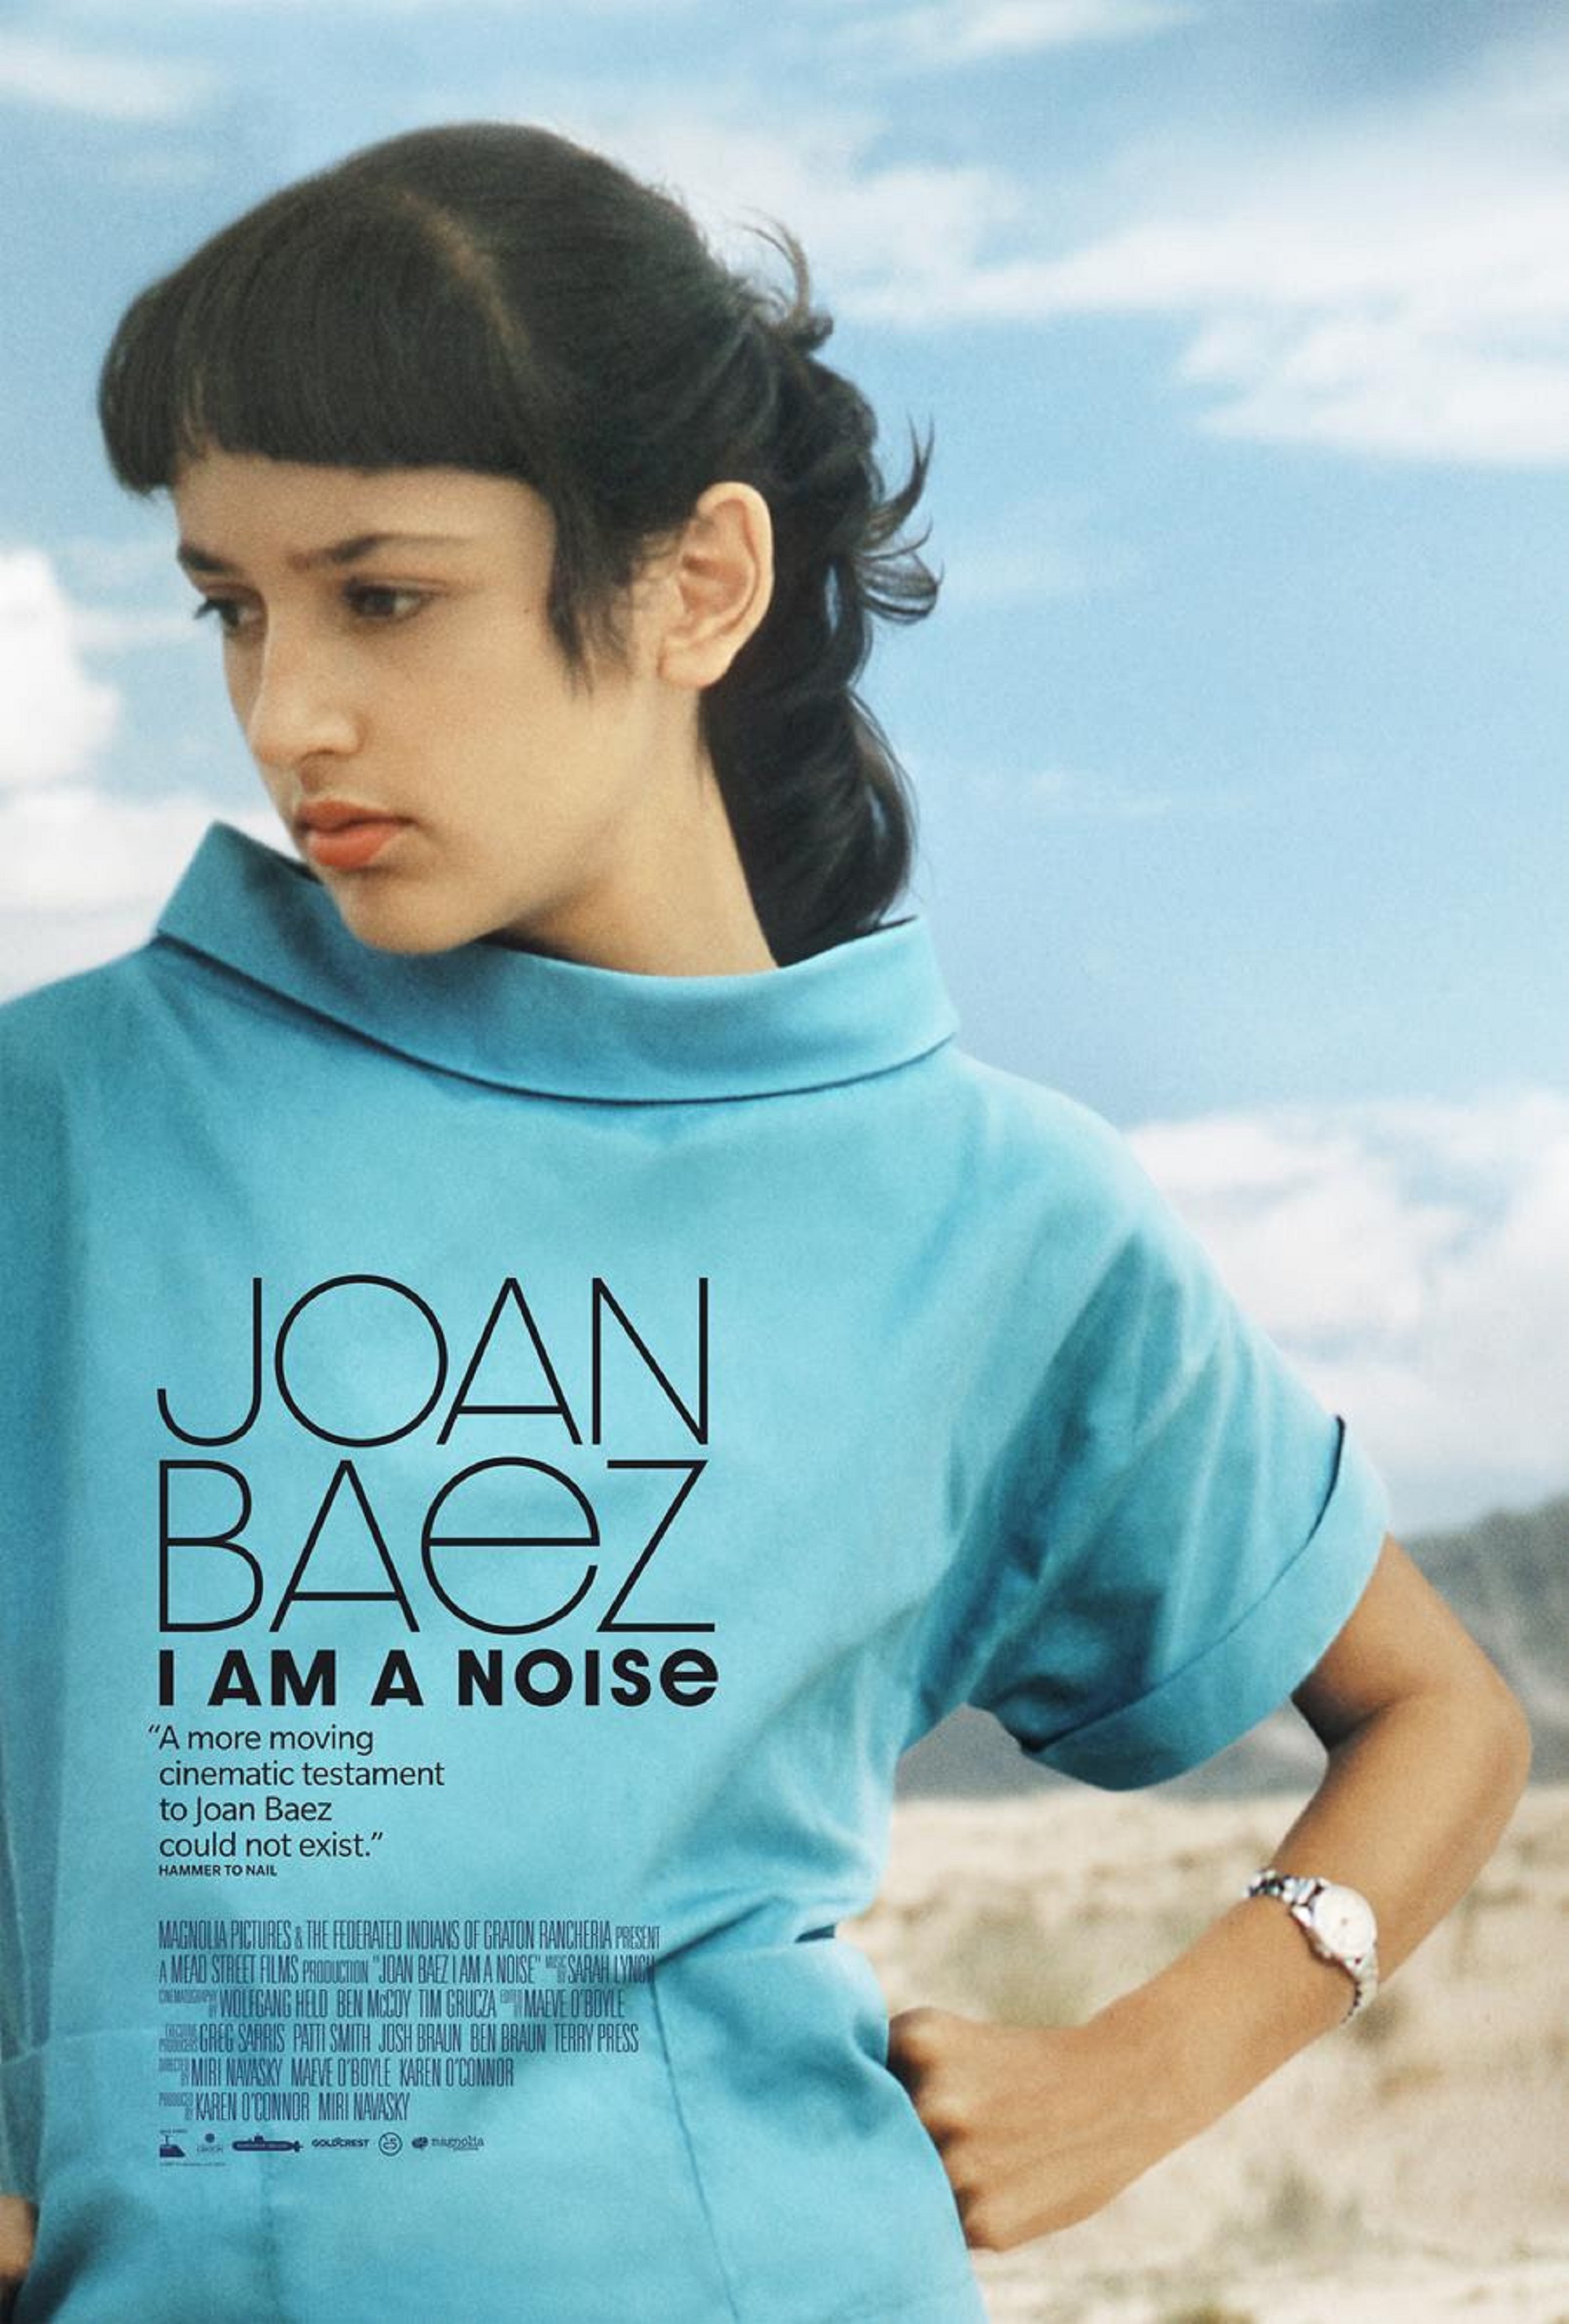 JOAN BAEZ I AM A NOISE | Official Trailer Out Now